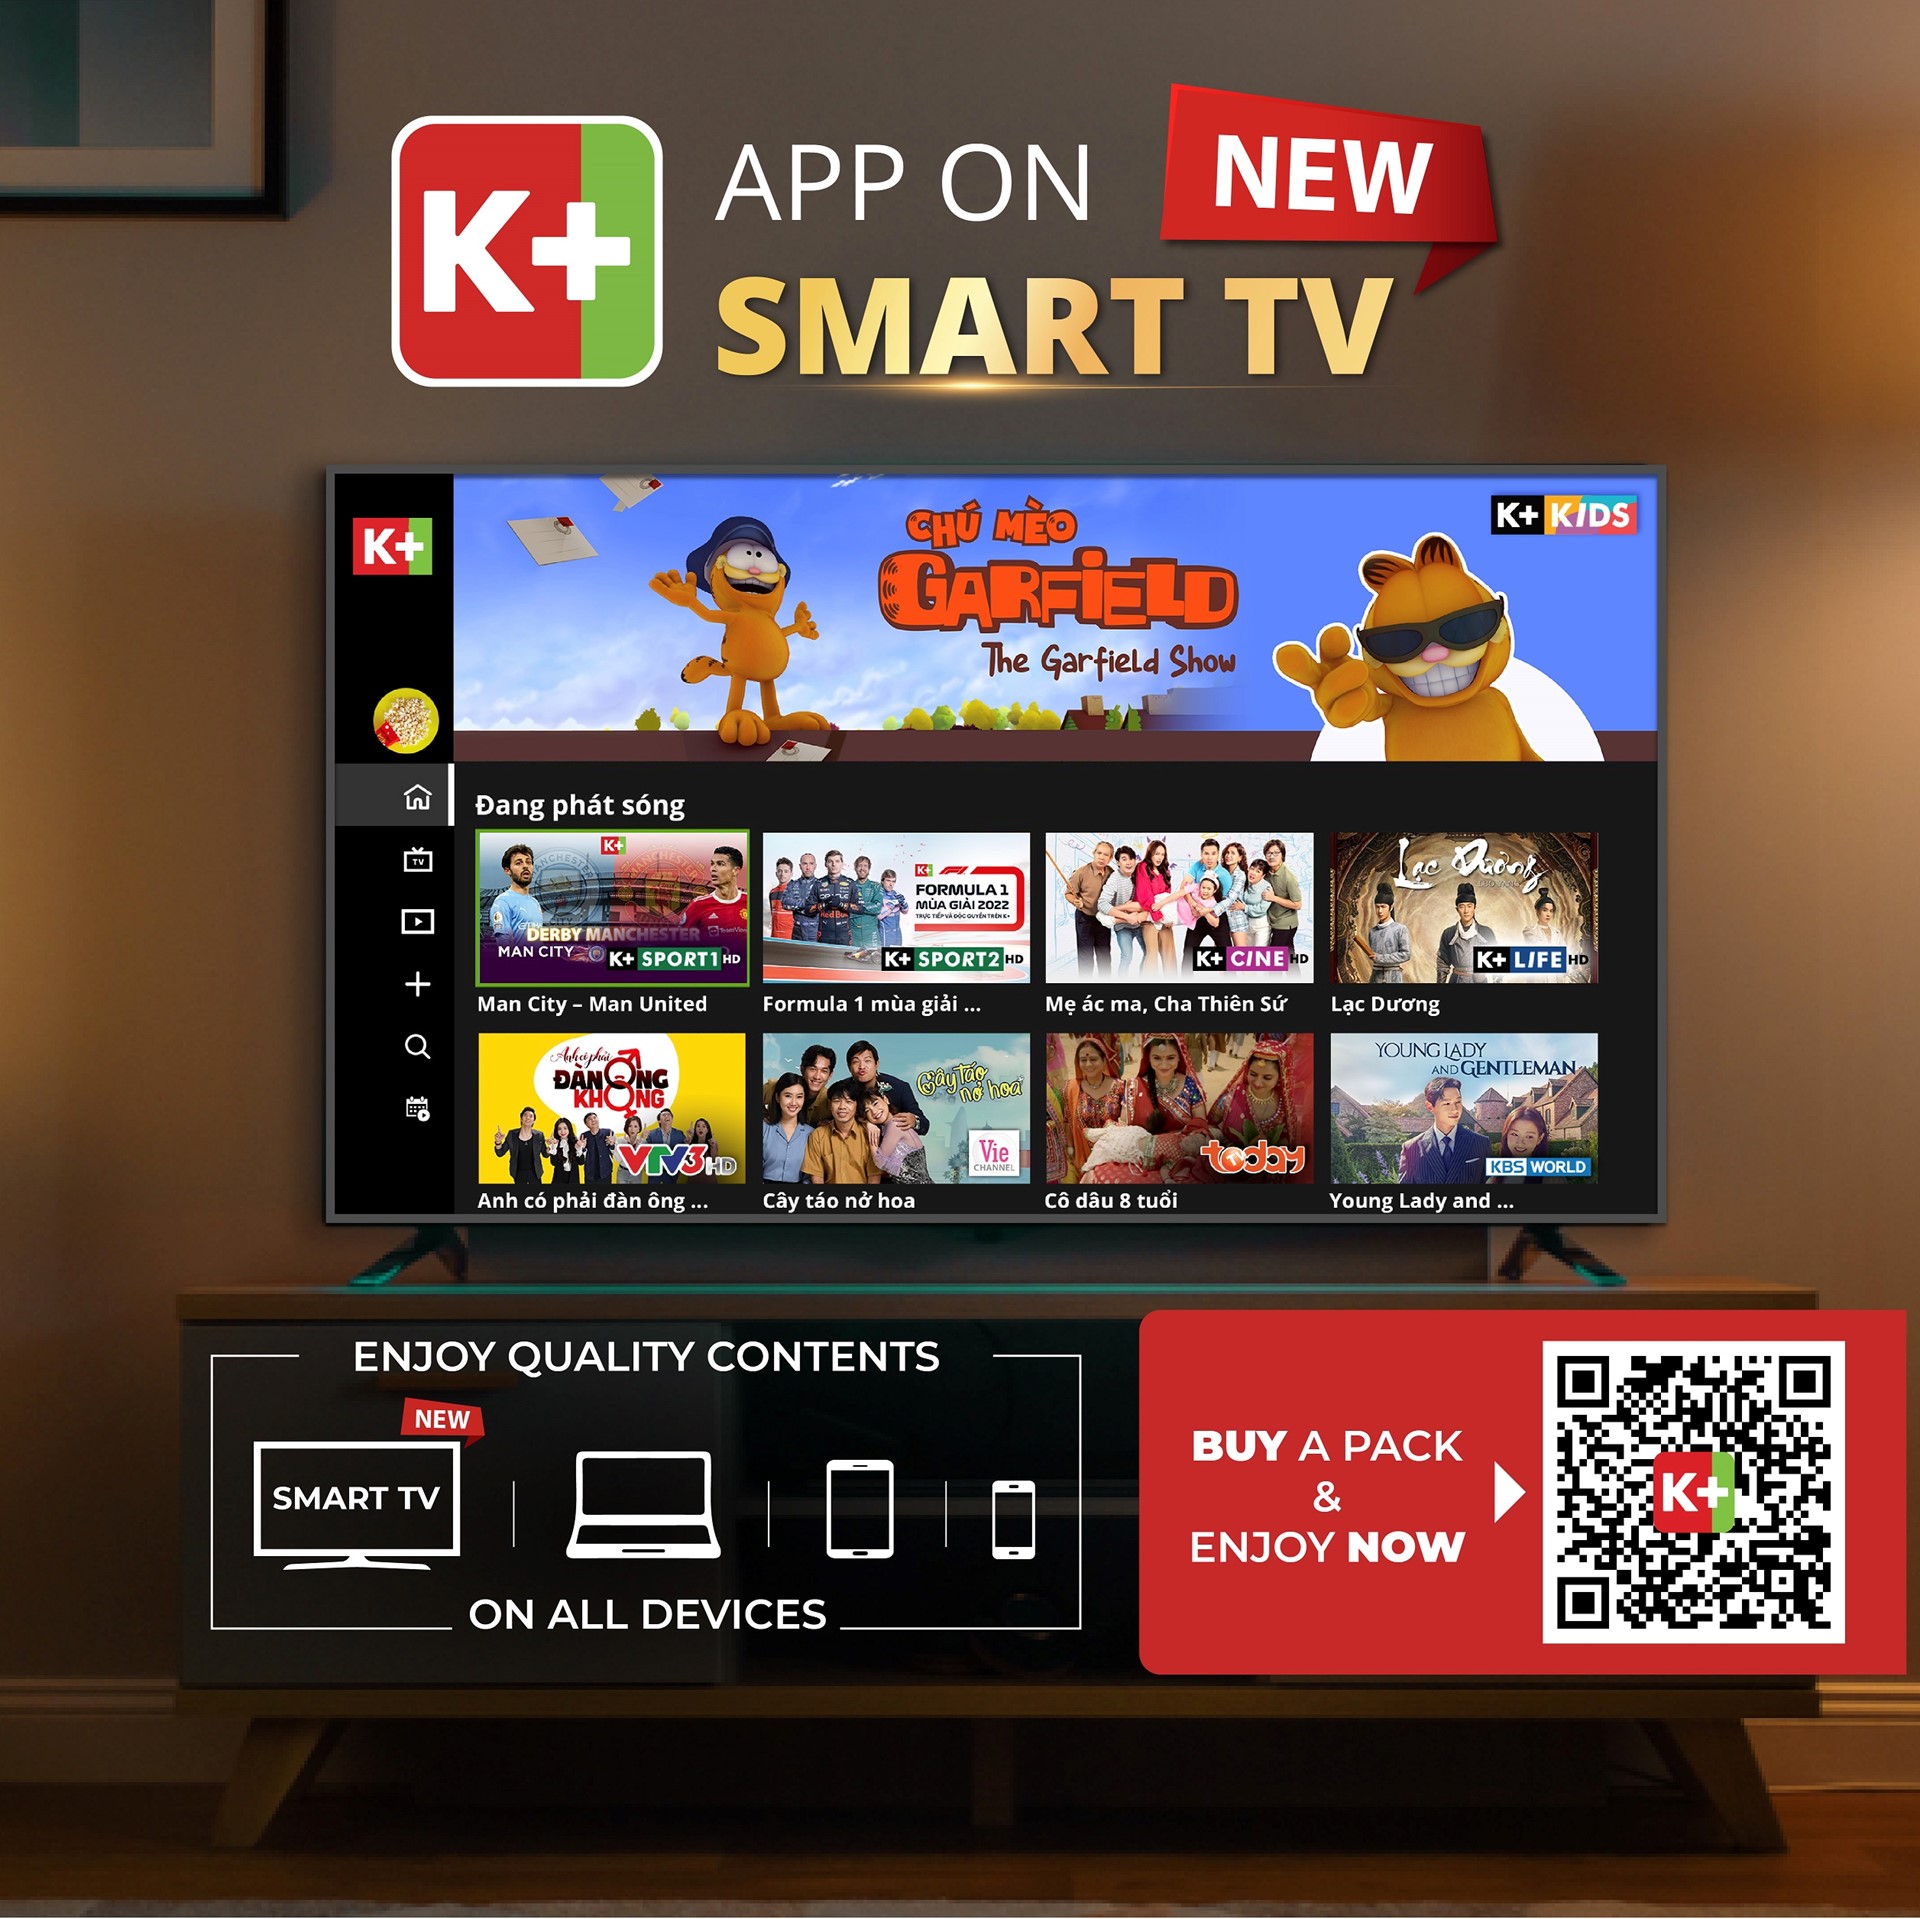 K+ App on smart tv